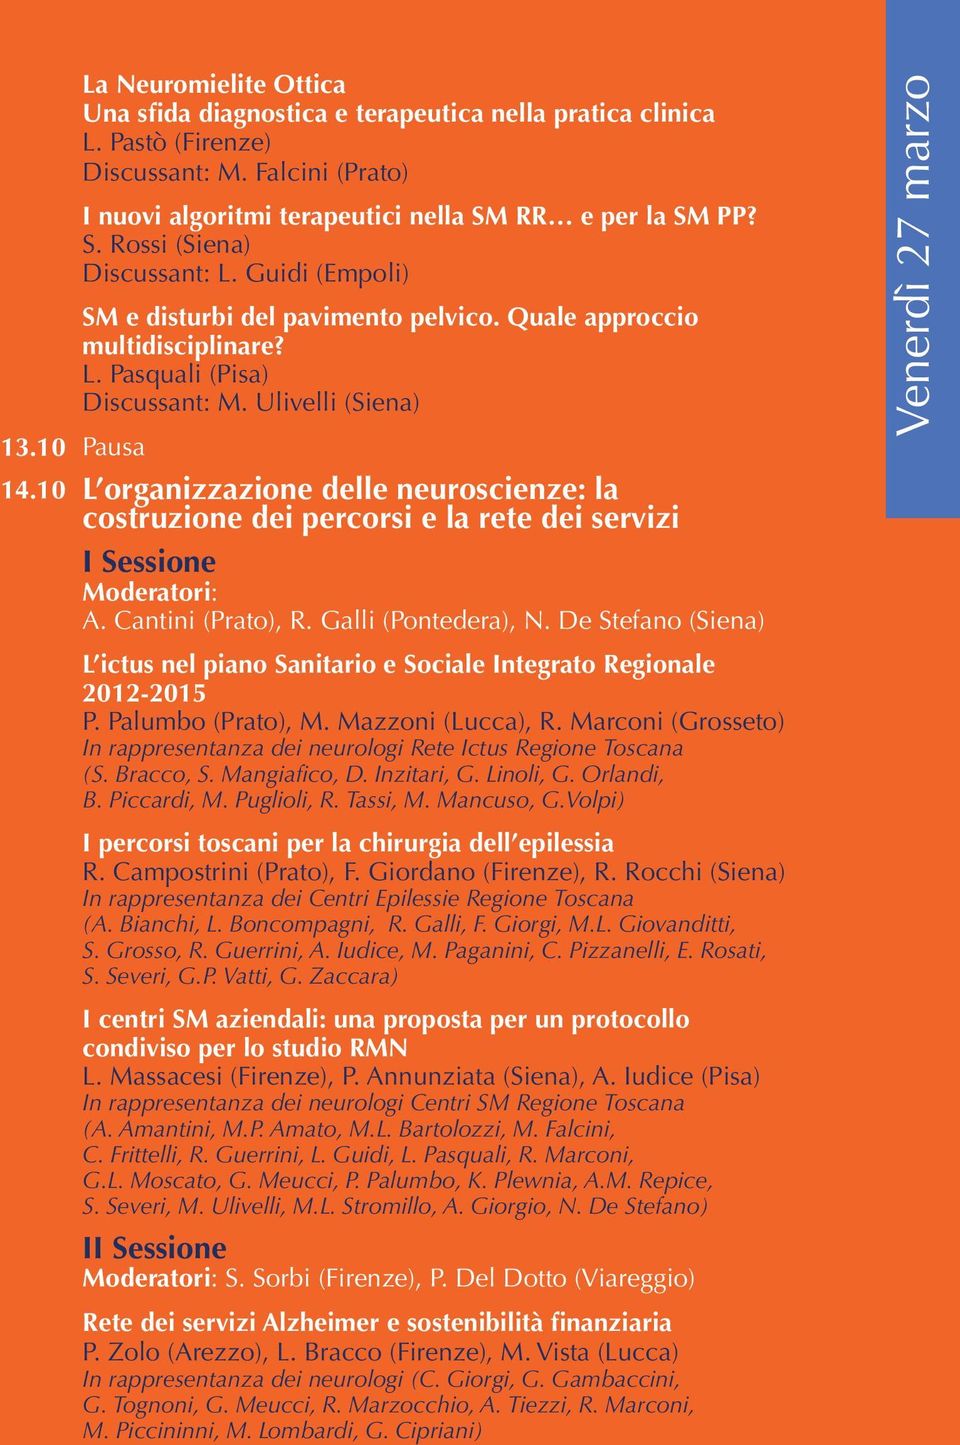 Ulivelli (Siena) L organizzazione delle neuroscienze: la costruzione dei percorsi e la rete dei servizi I Sessione A. Cantini (Prato), R. Galli (Pontedera), N.